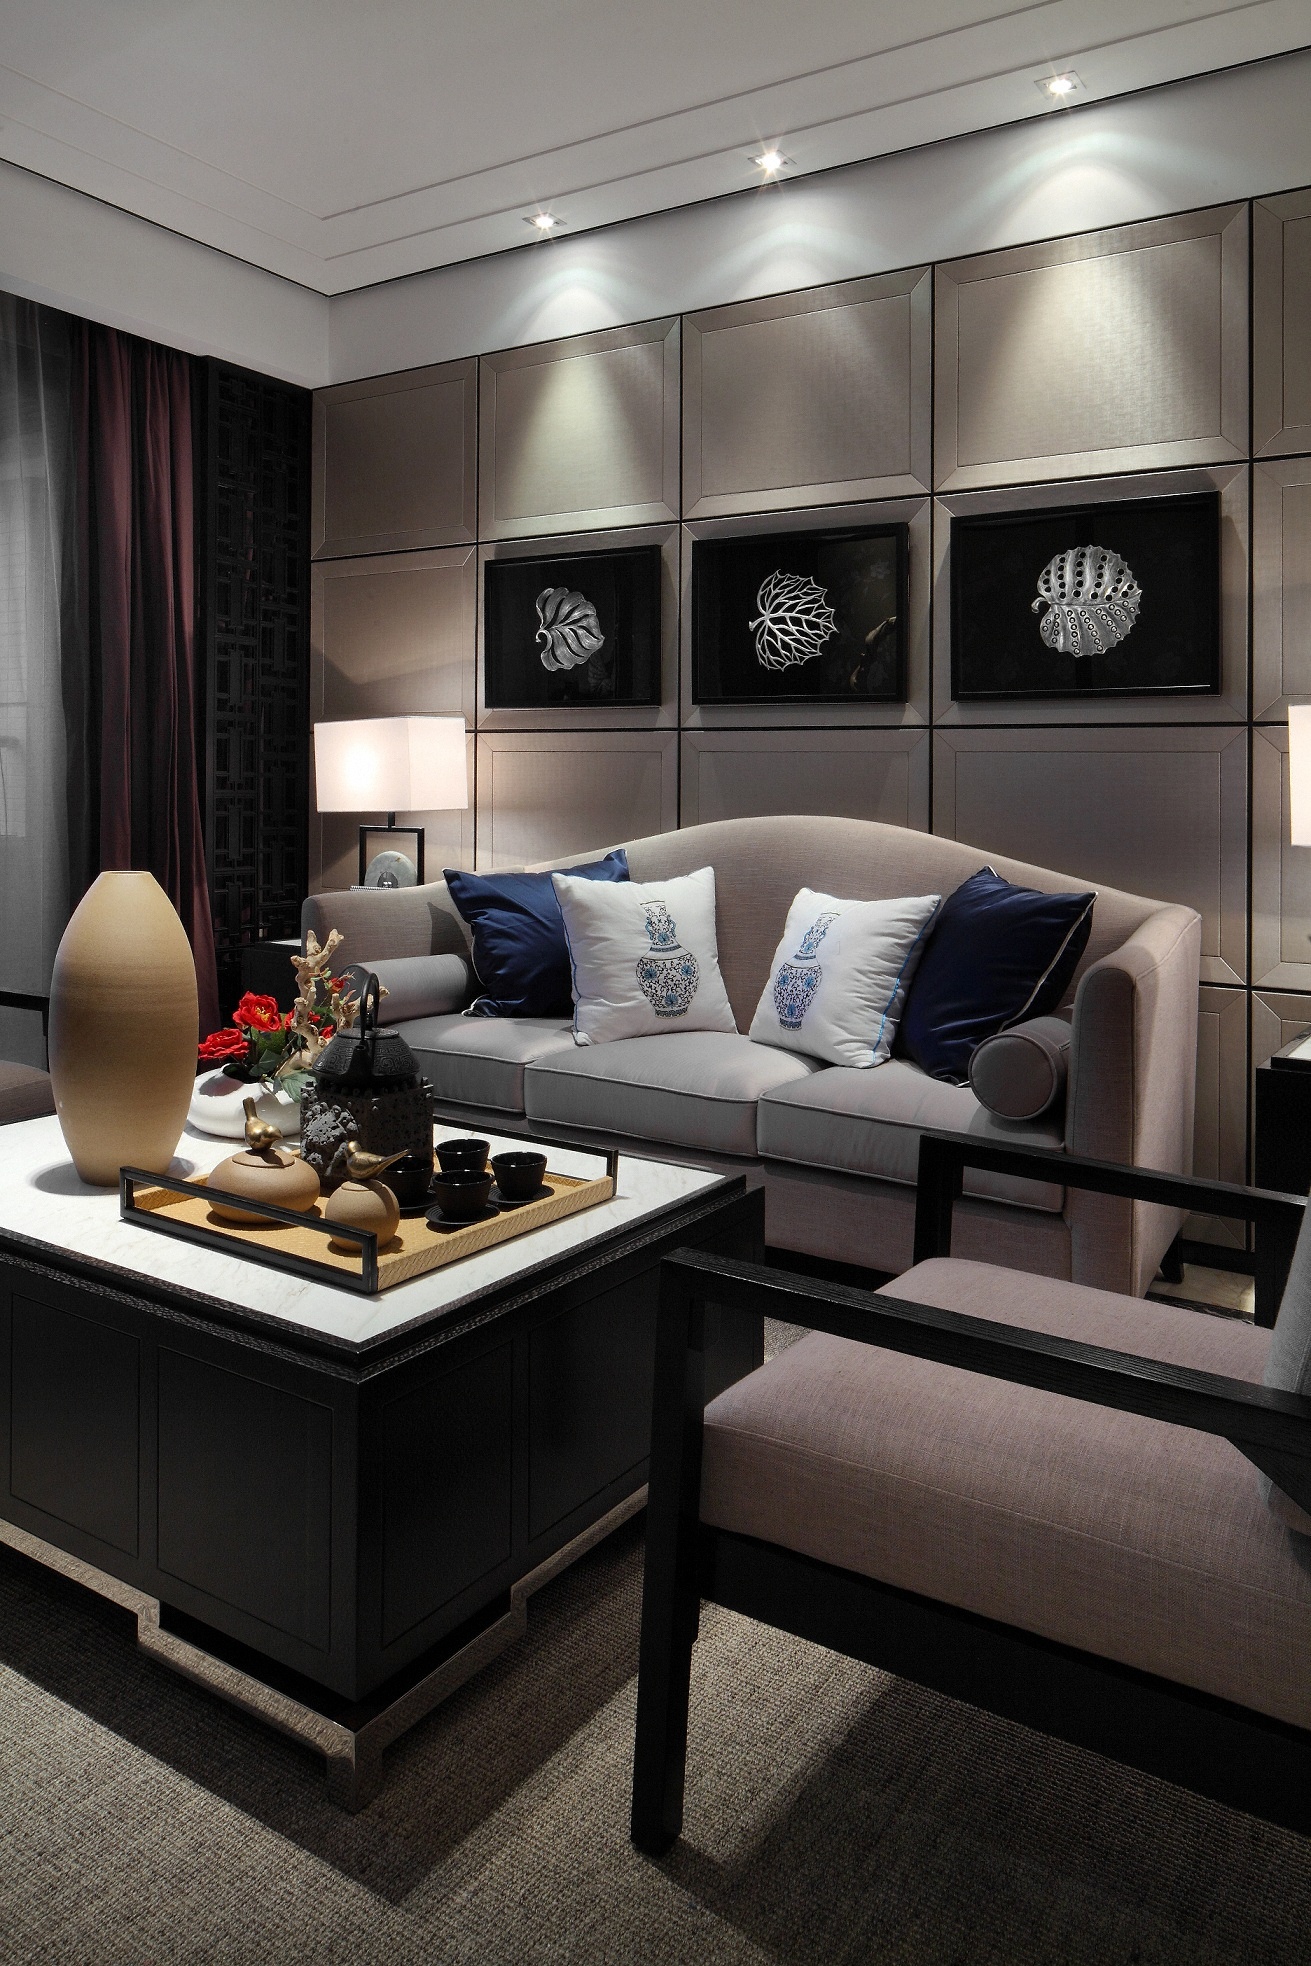 中国传统的室内设计融合着庄重和优雅的双重品质